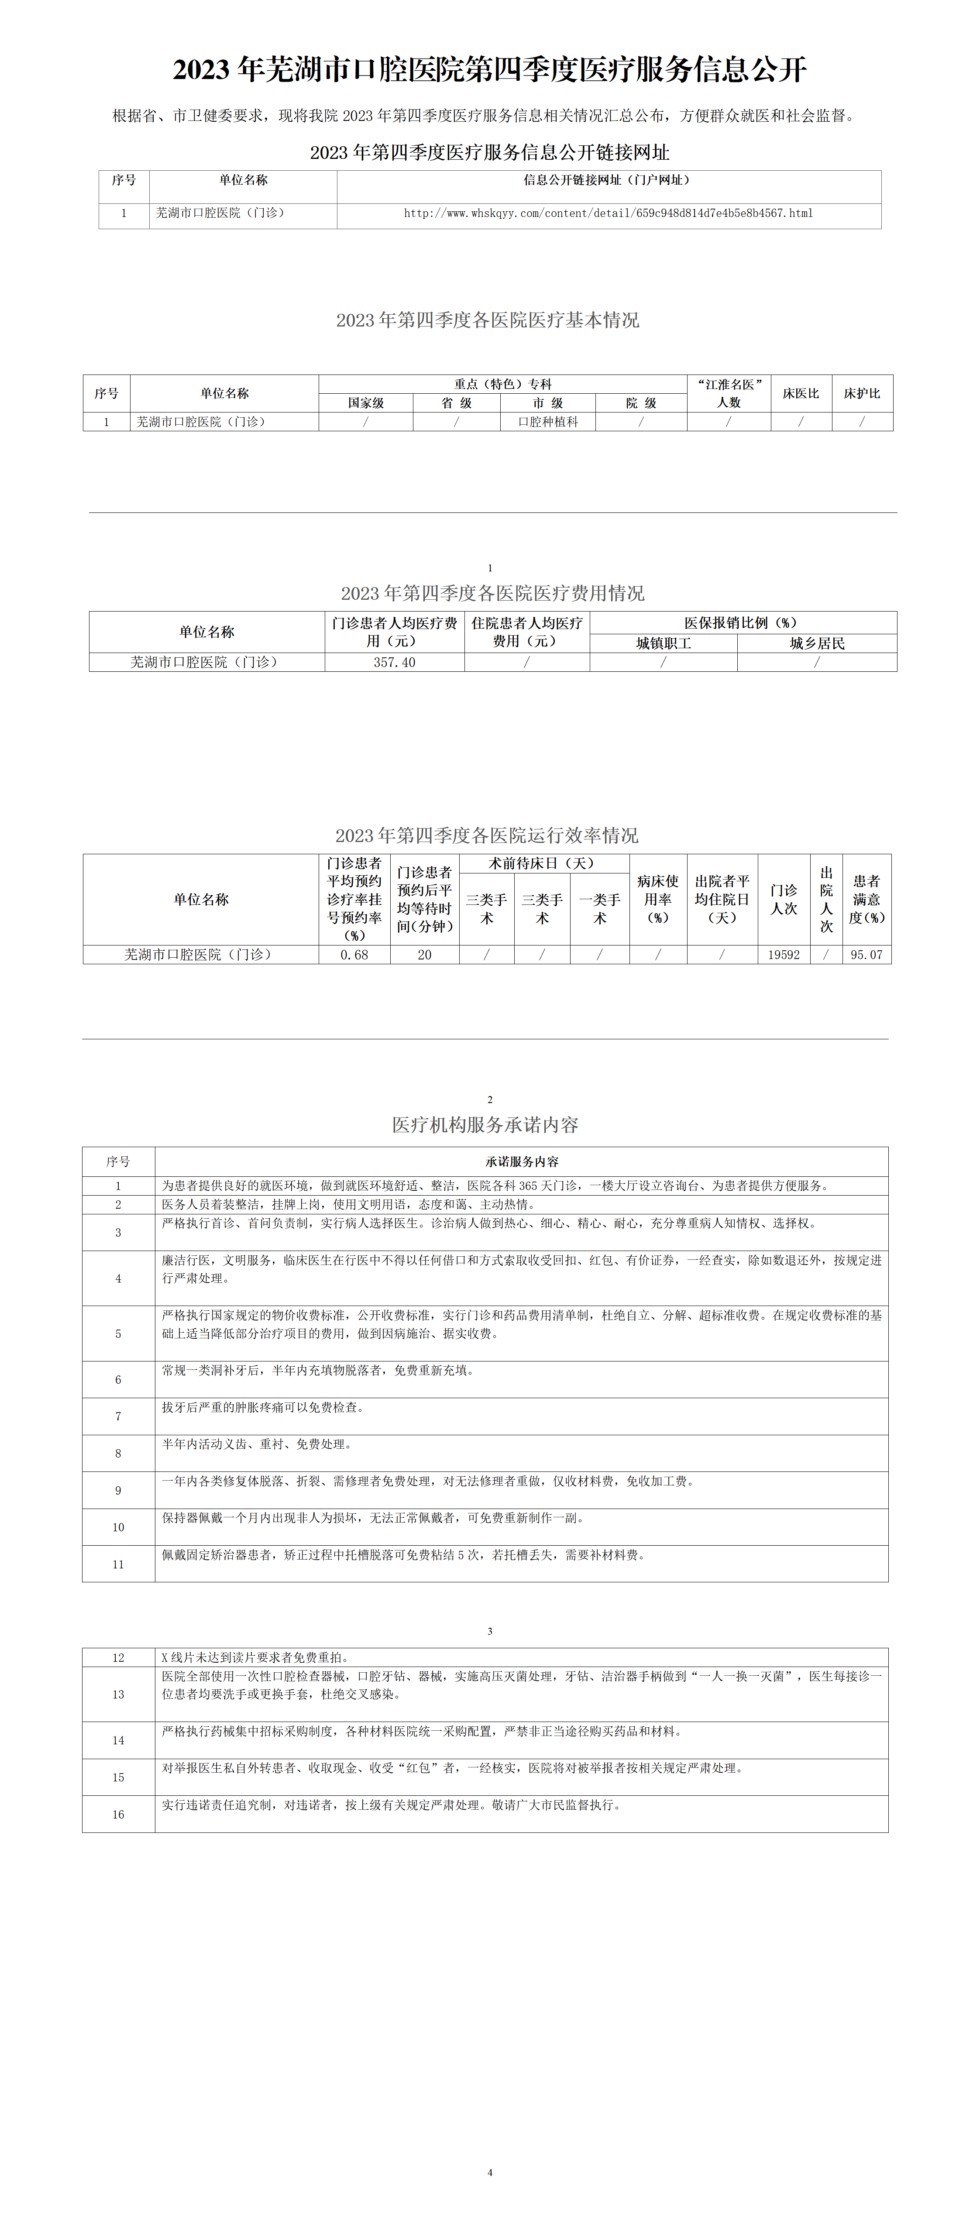 2023年芜湖市口腔医院第四季度医疗服务信息公开-挂网版_01(1).png